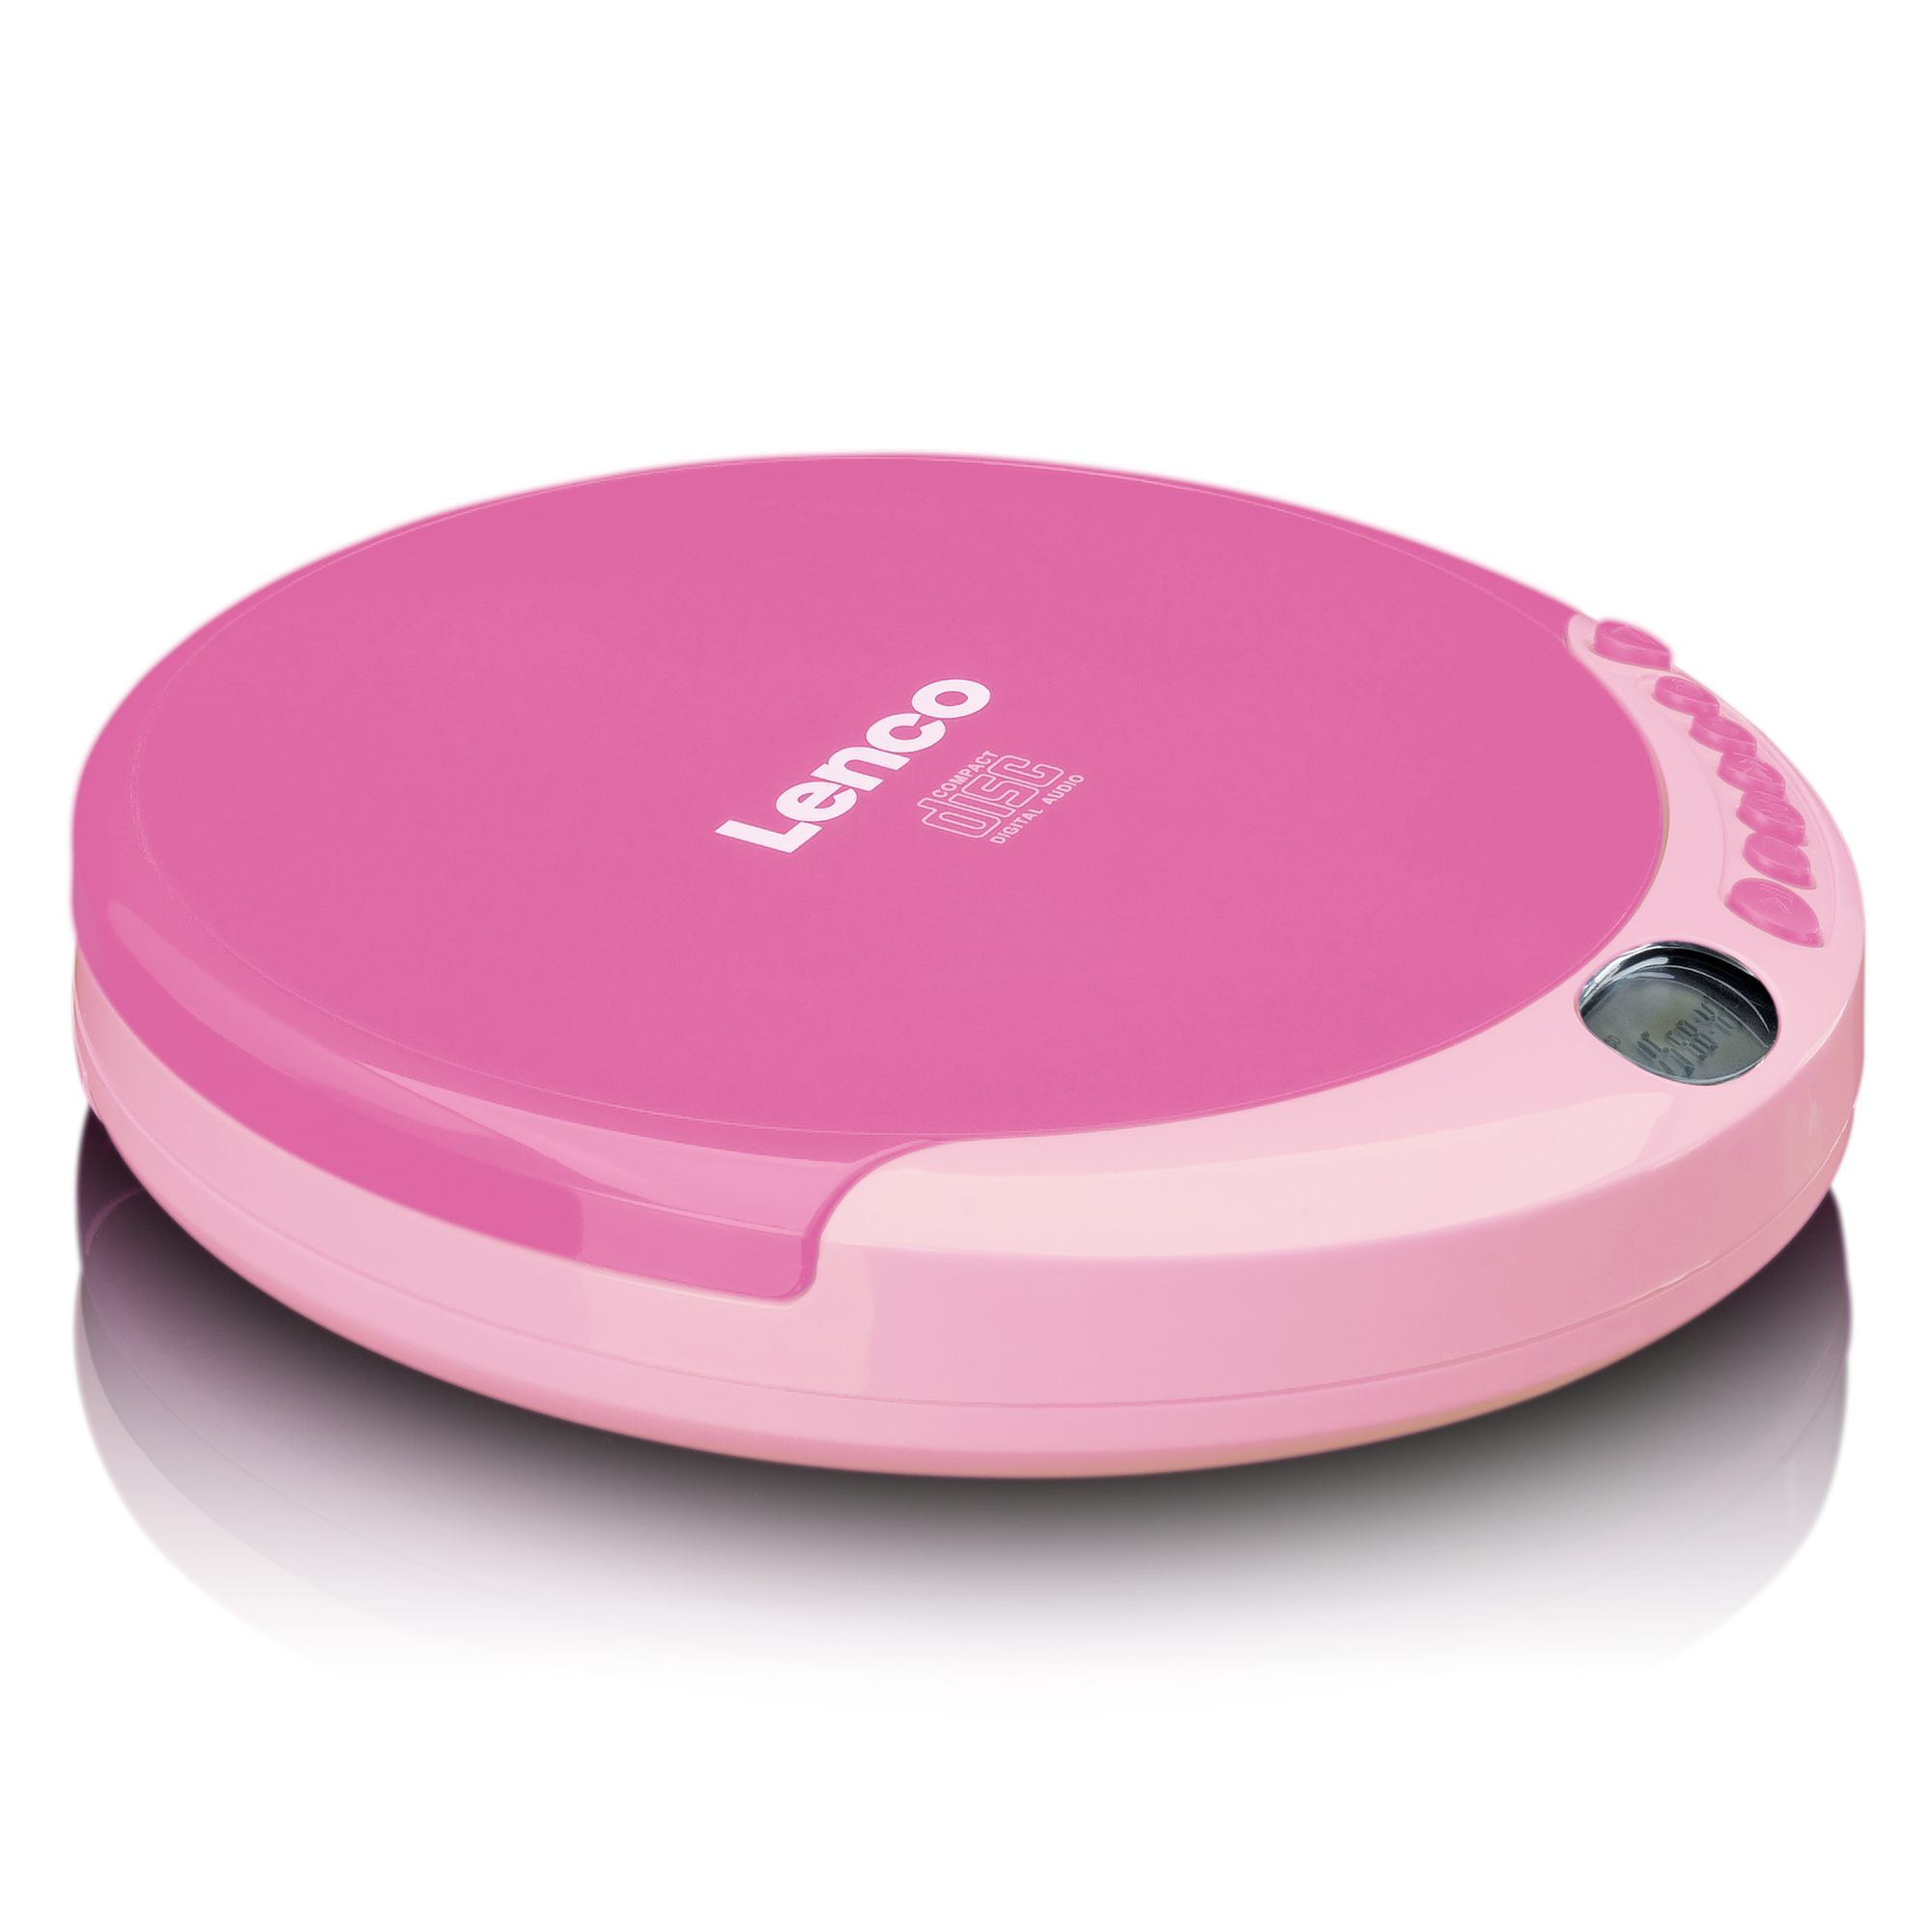 CD-011PK CD-Spieler LENCO Pink